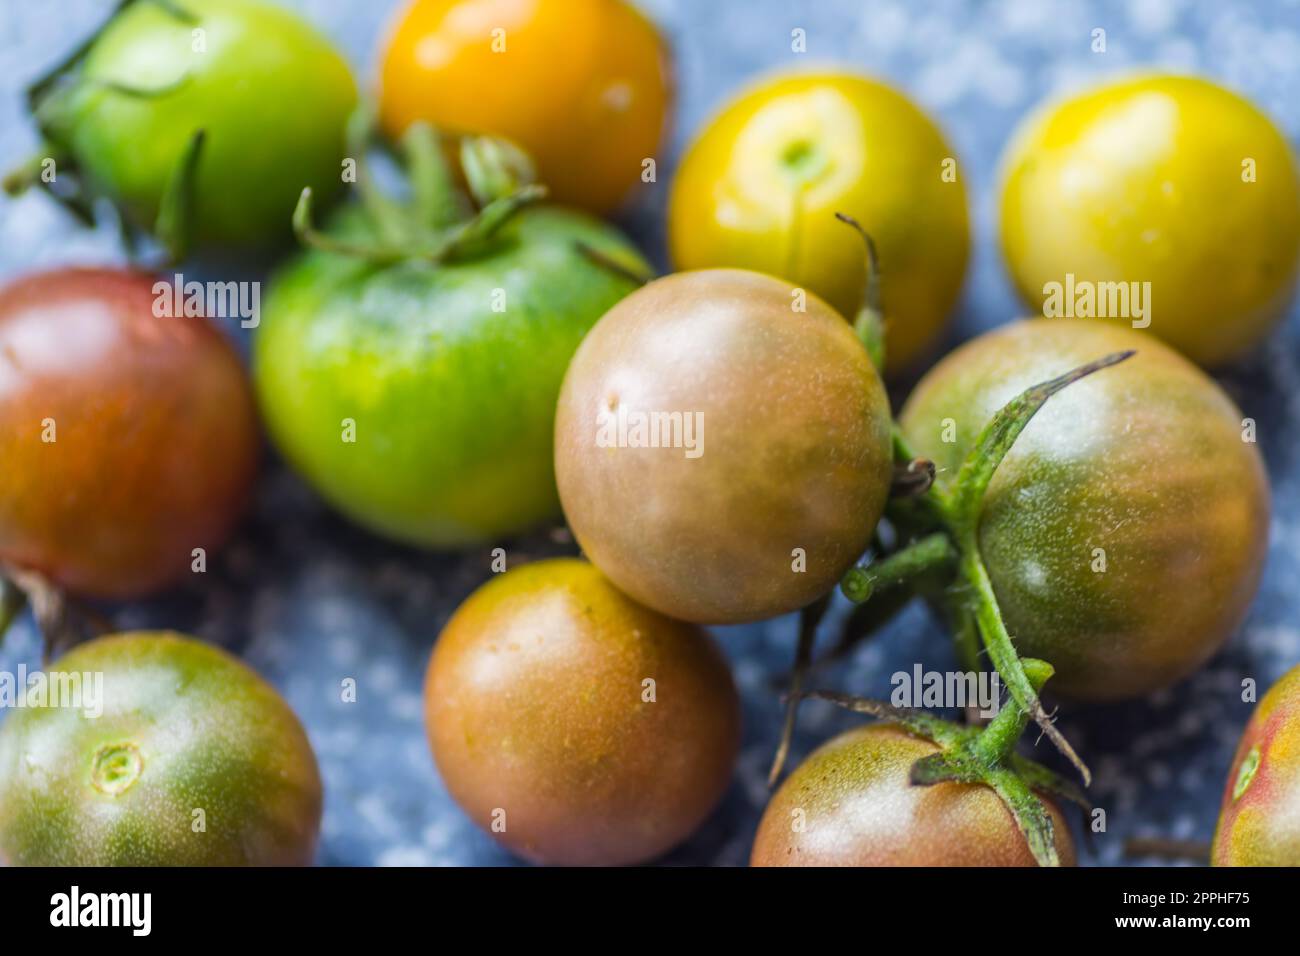 molti pomodori poco maturi con colori diversi nei dettagli Foto Stock